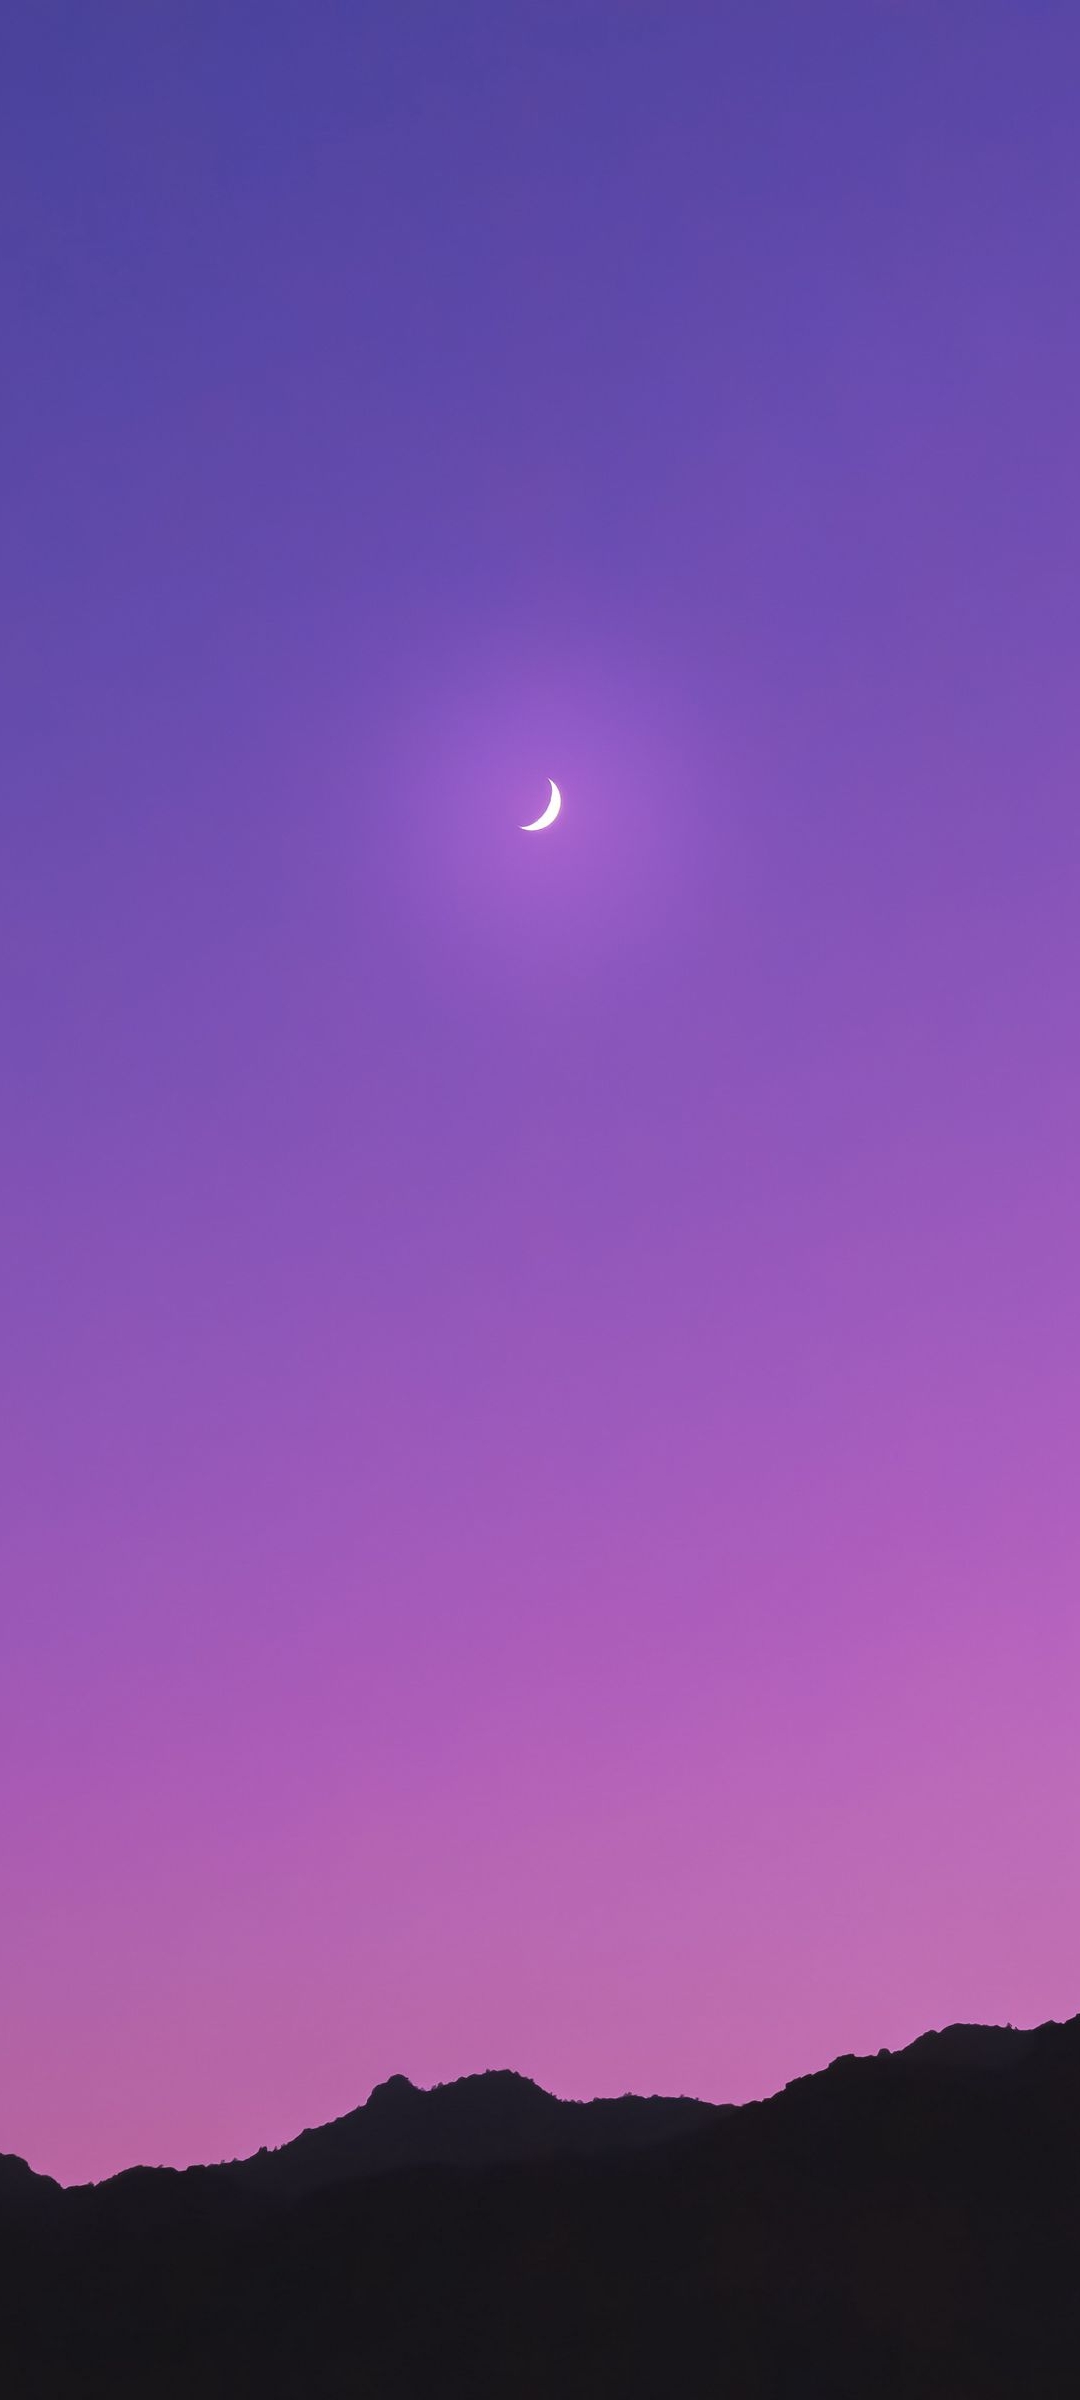 三日月 紫のグラデーションの空 黒い山 Galaxy S21 5g Androidスマホ壁紙 待ち受け スマラン